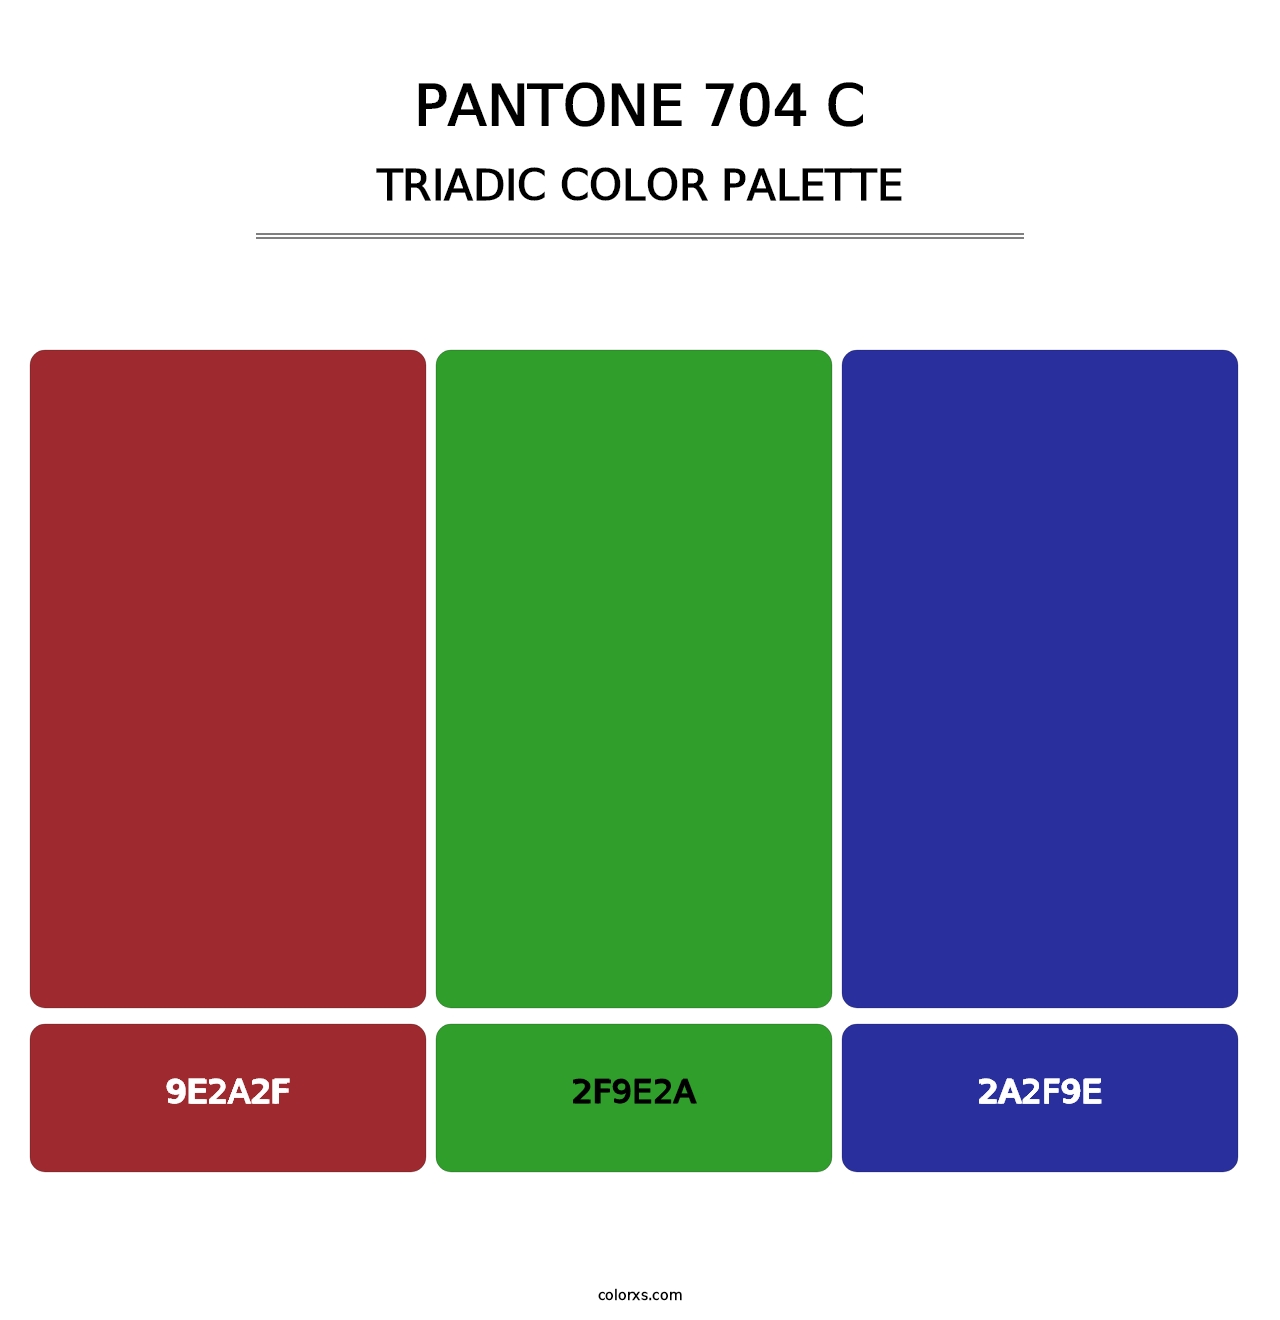 PANTONE 704 C - Triadic Color Palette